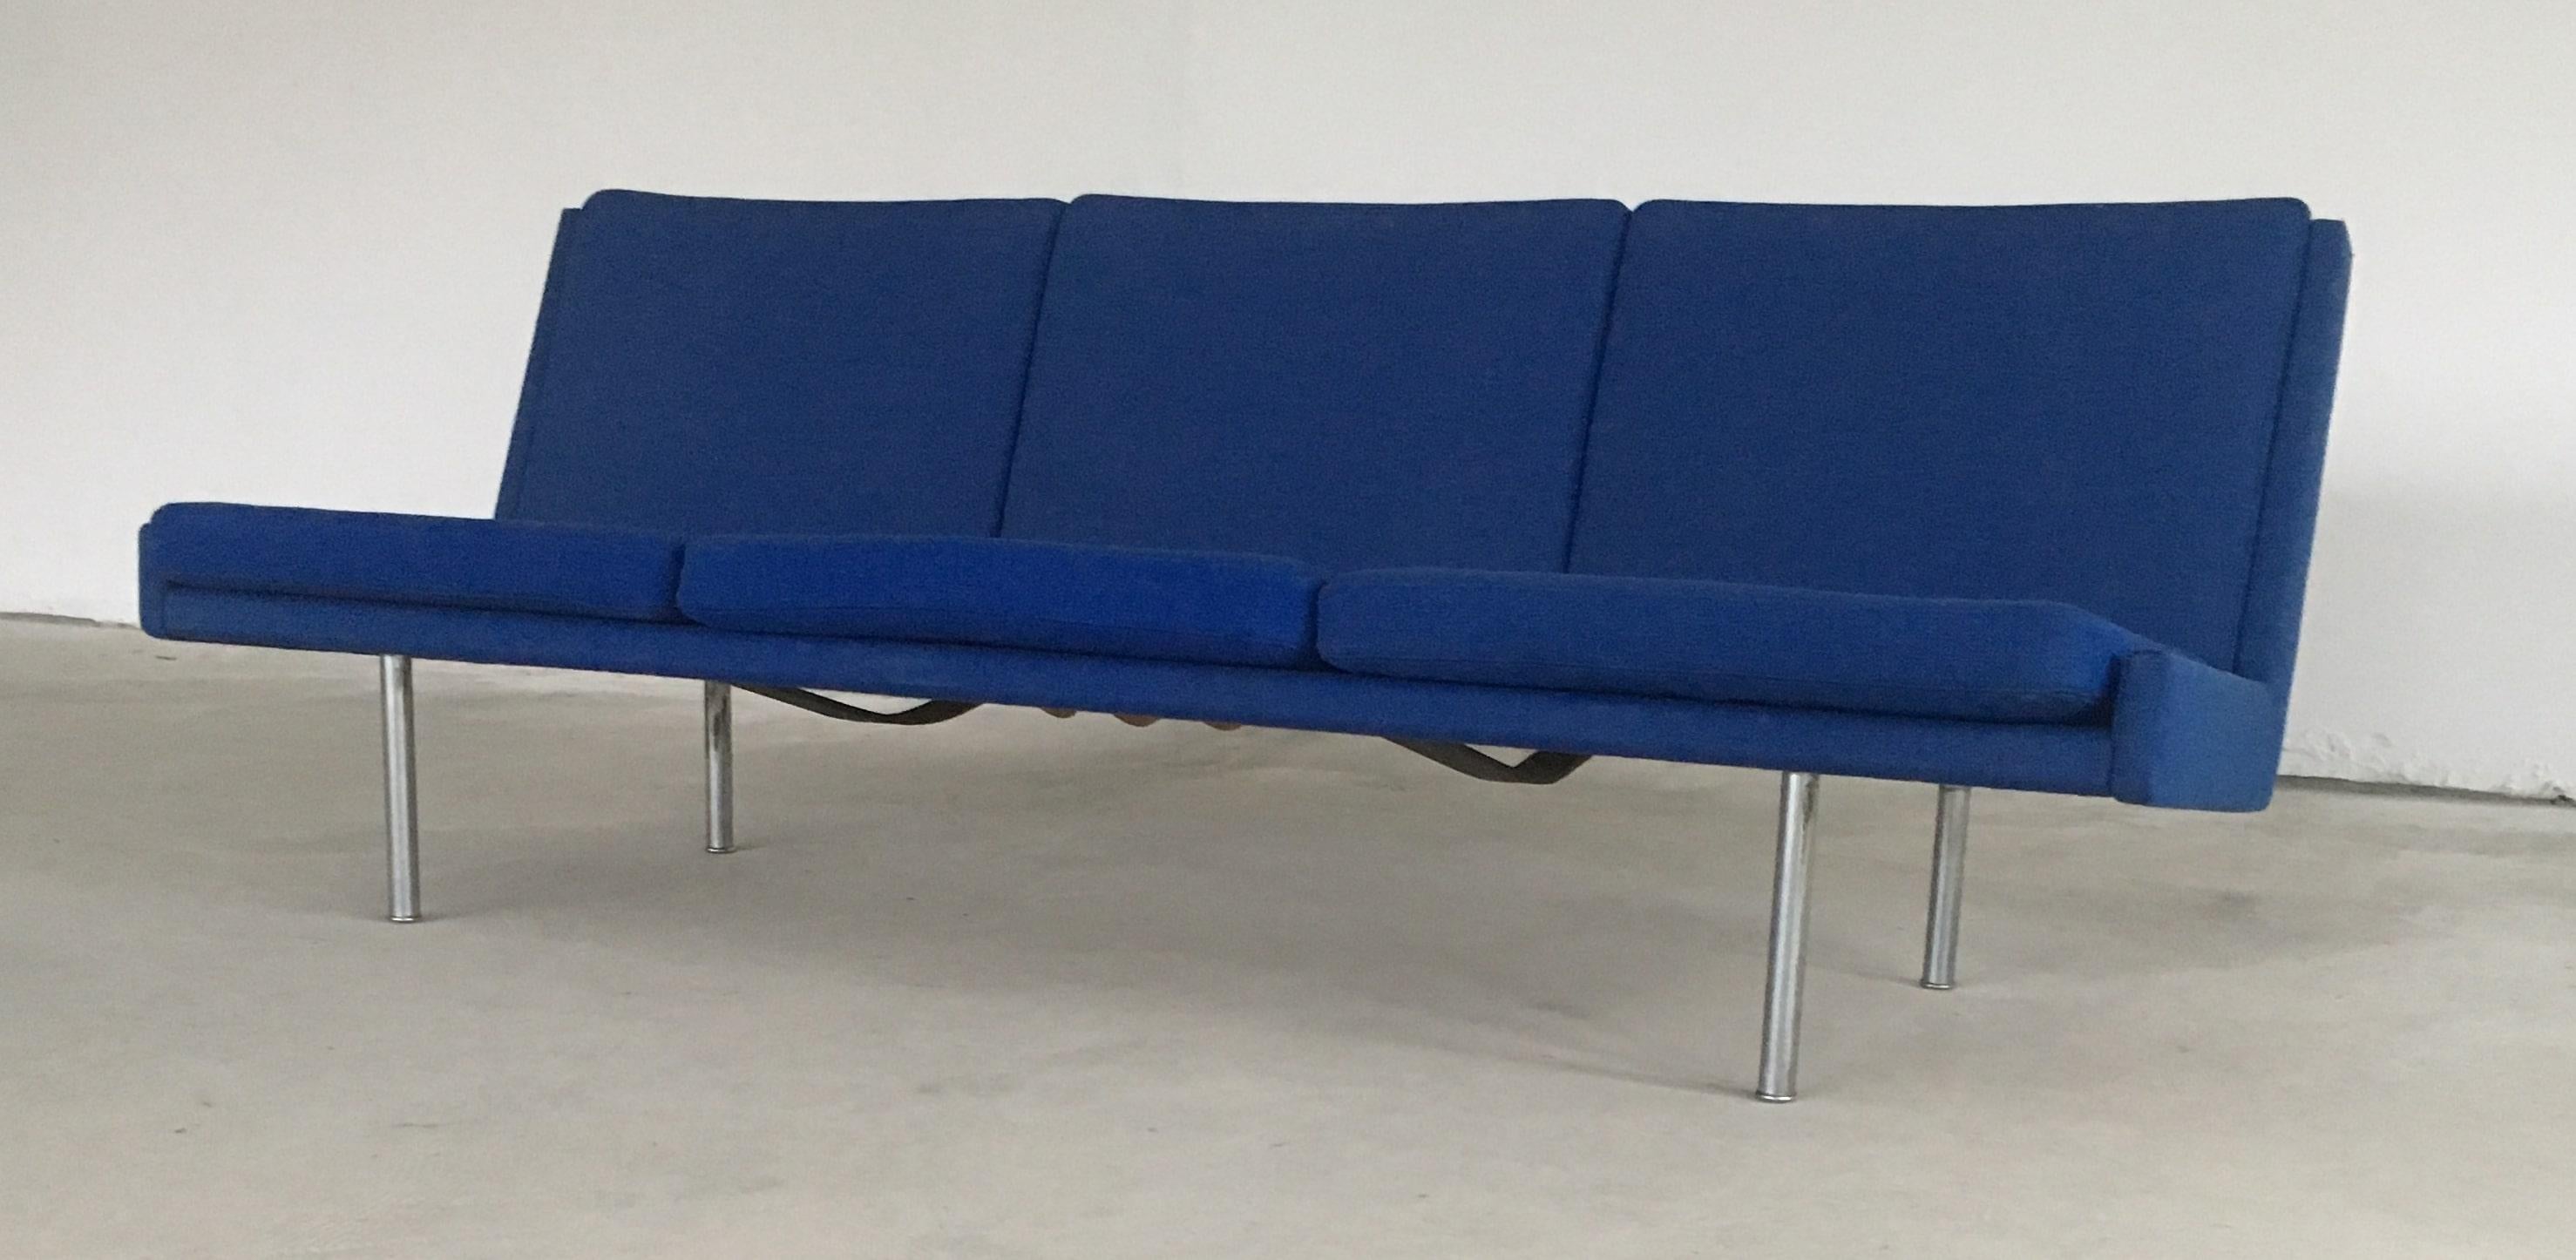 Scandinavian Modern 1960s Hans J. Wegner Airport Sofa in Original Blue Fabric by A.P. Stolen For Sale